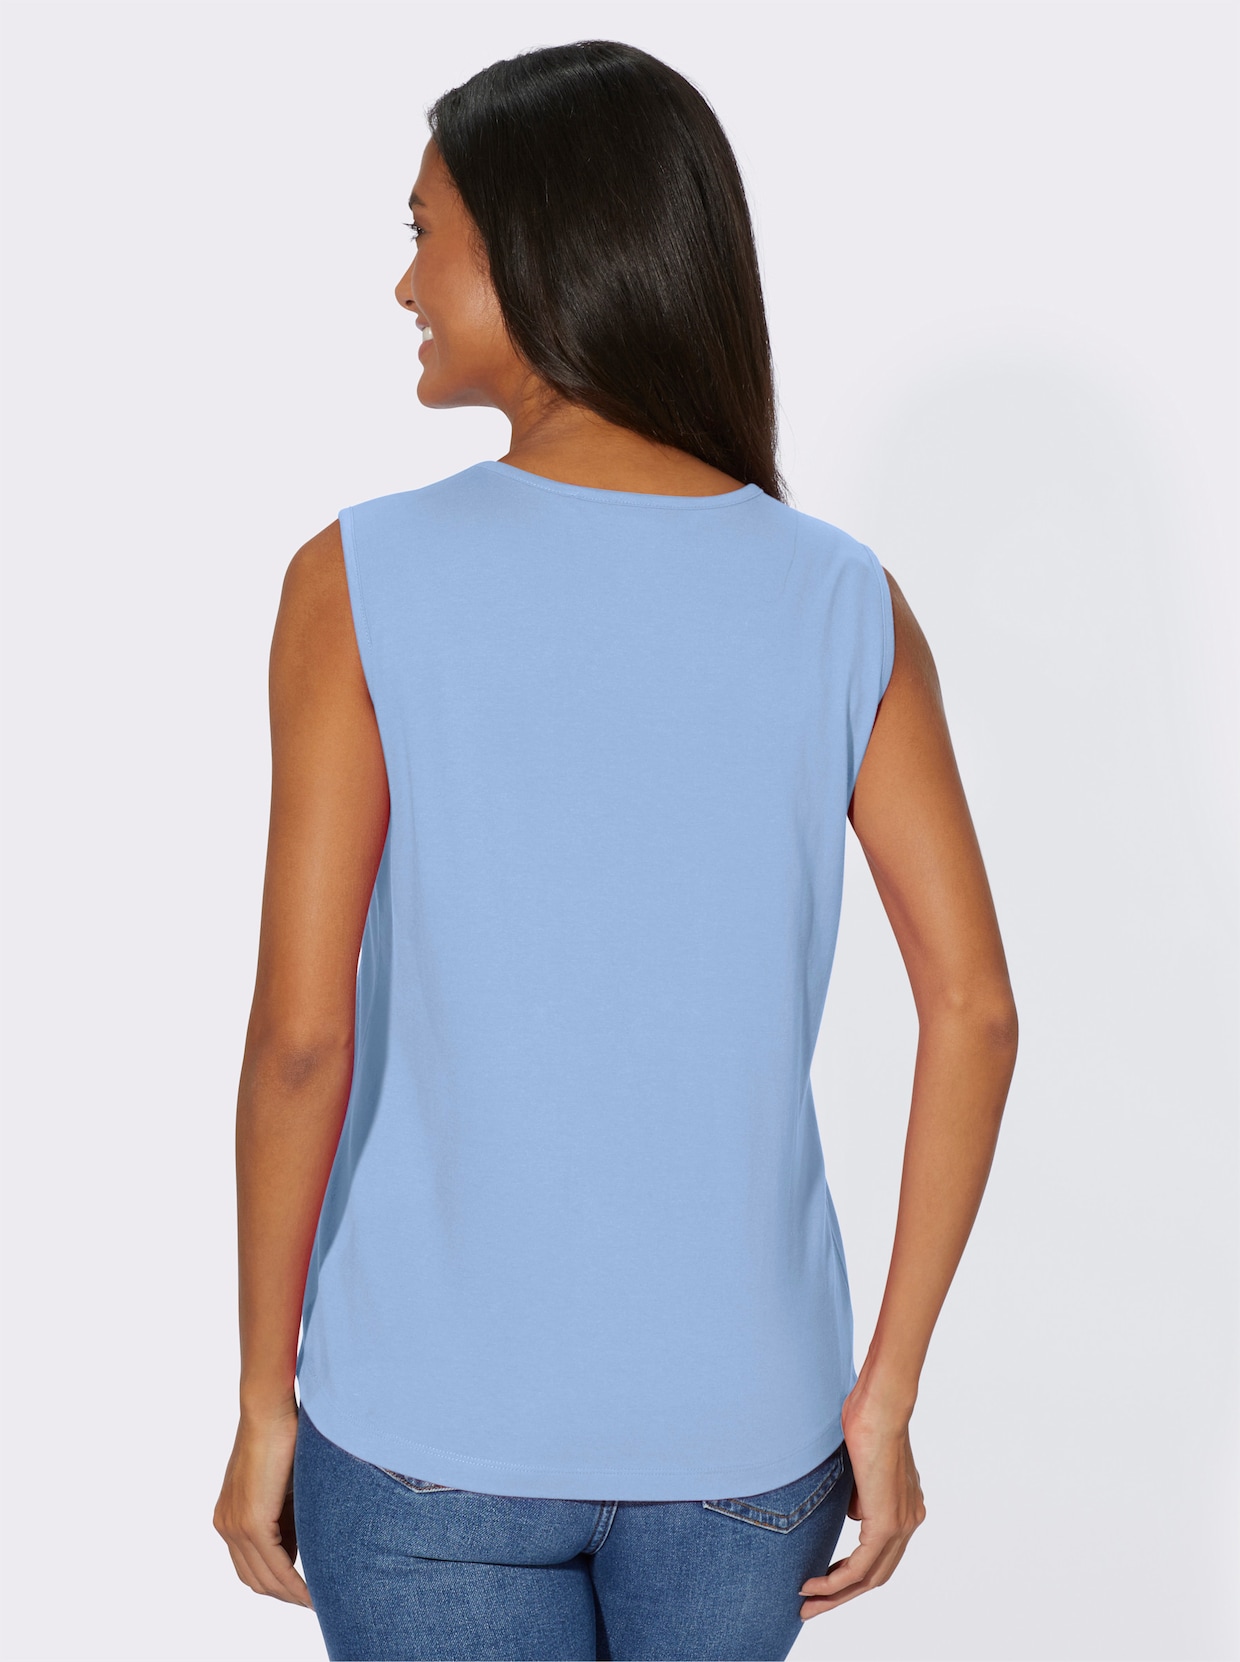 Shirttop - hemelsblauw + hemelsblauw/wit bedrukt